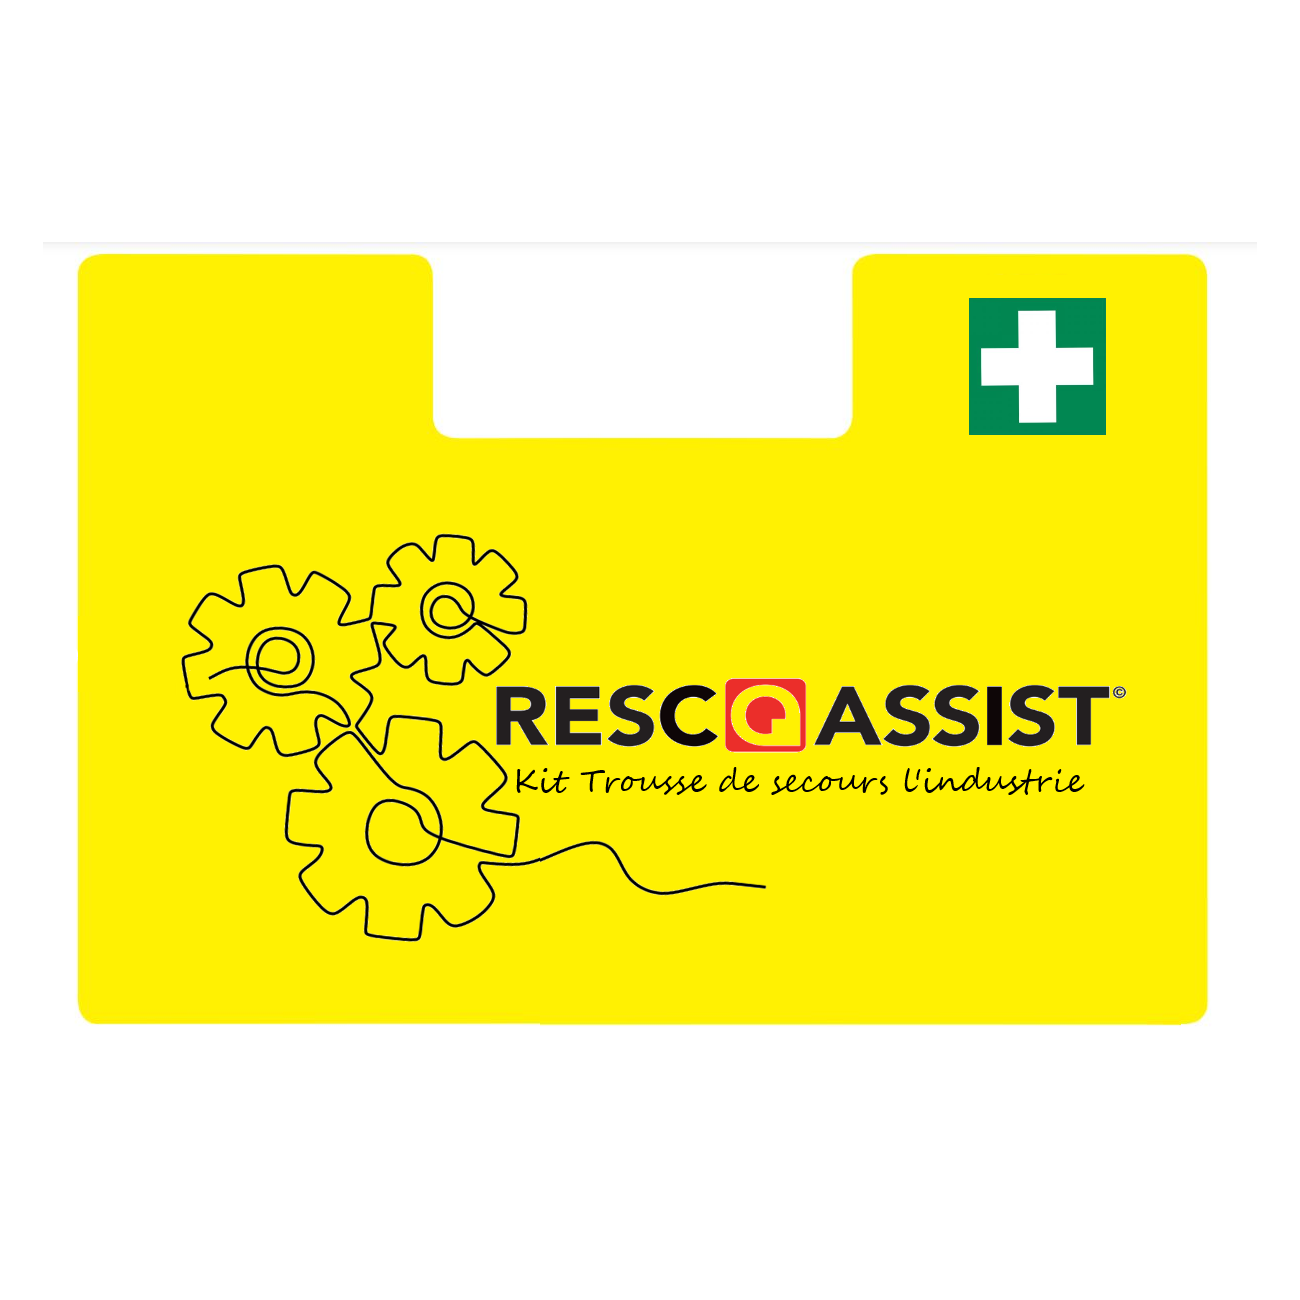 Resc-Q-Assist Trousse De Secours L’industrie DIN